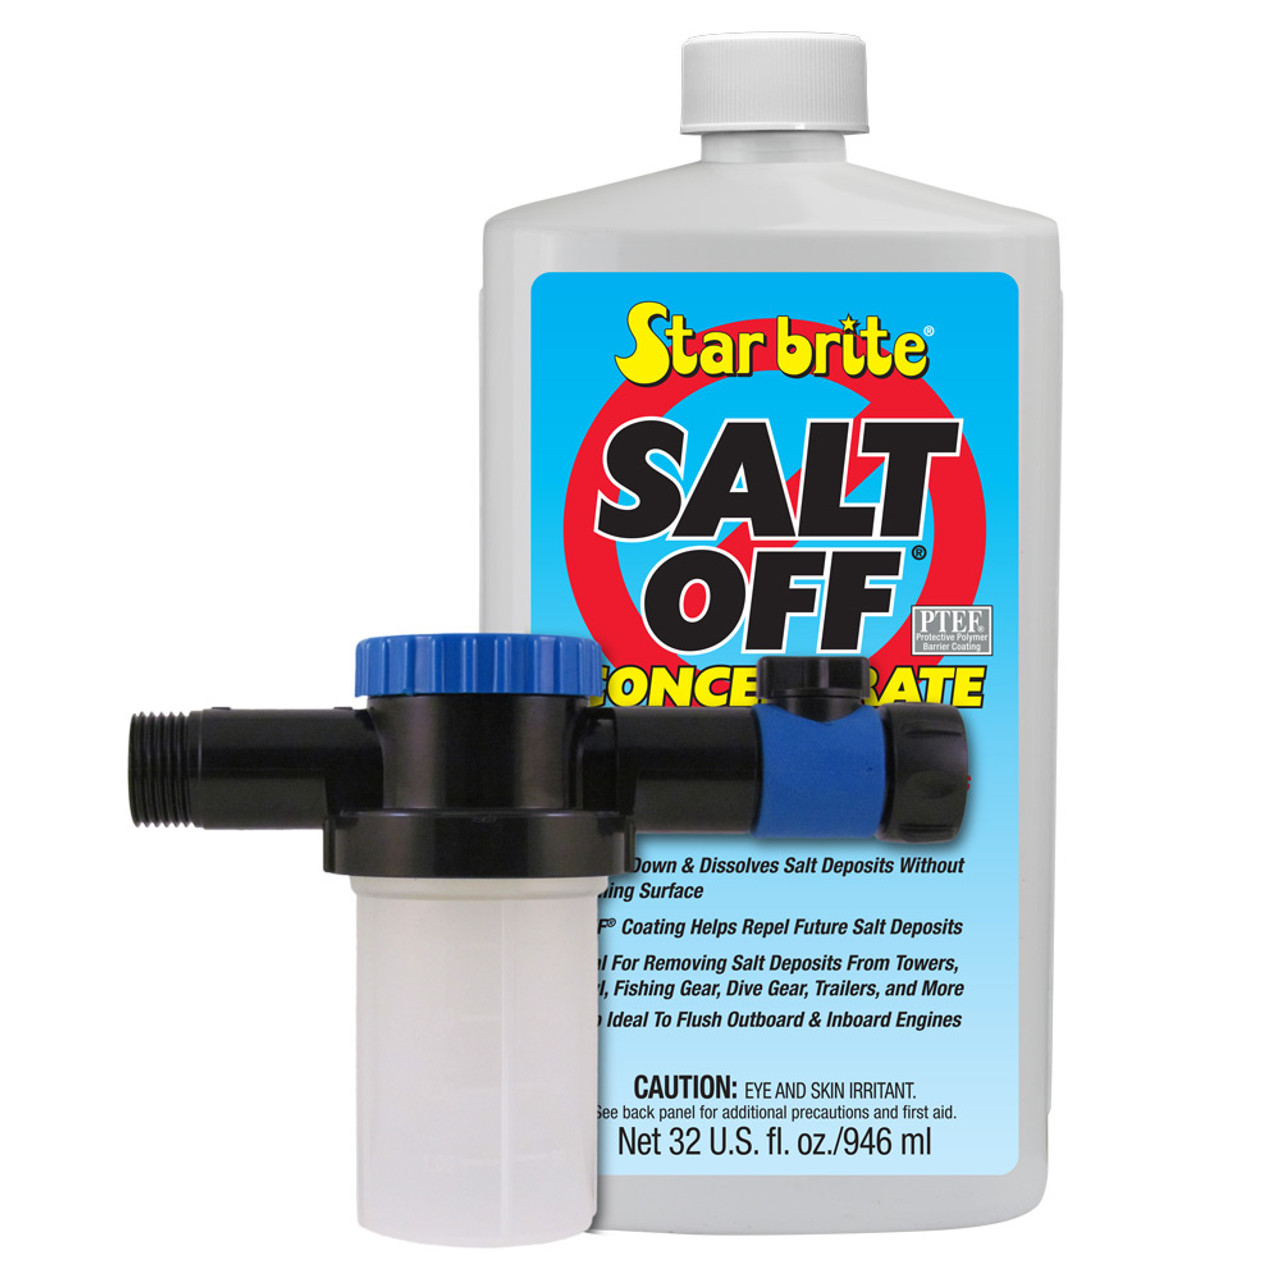 Salt Off Concentrate Kit with Applicator - Remove salt deposits